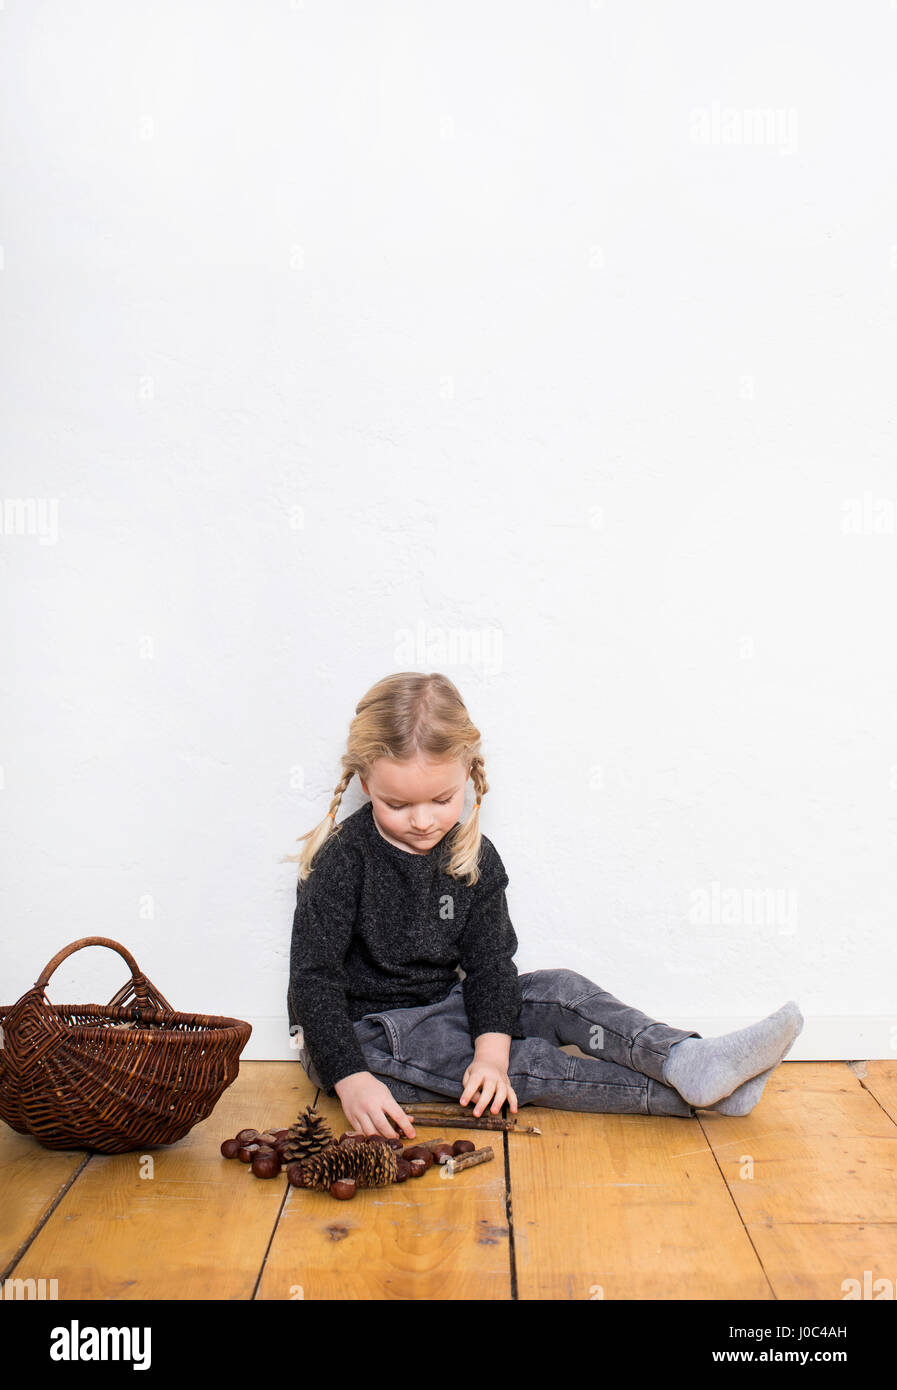 Jeune fille assise sur le plancher, le tri par le biais de cônes de pin et conkers Banque D'Images